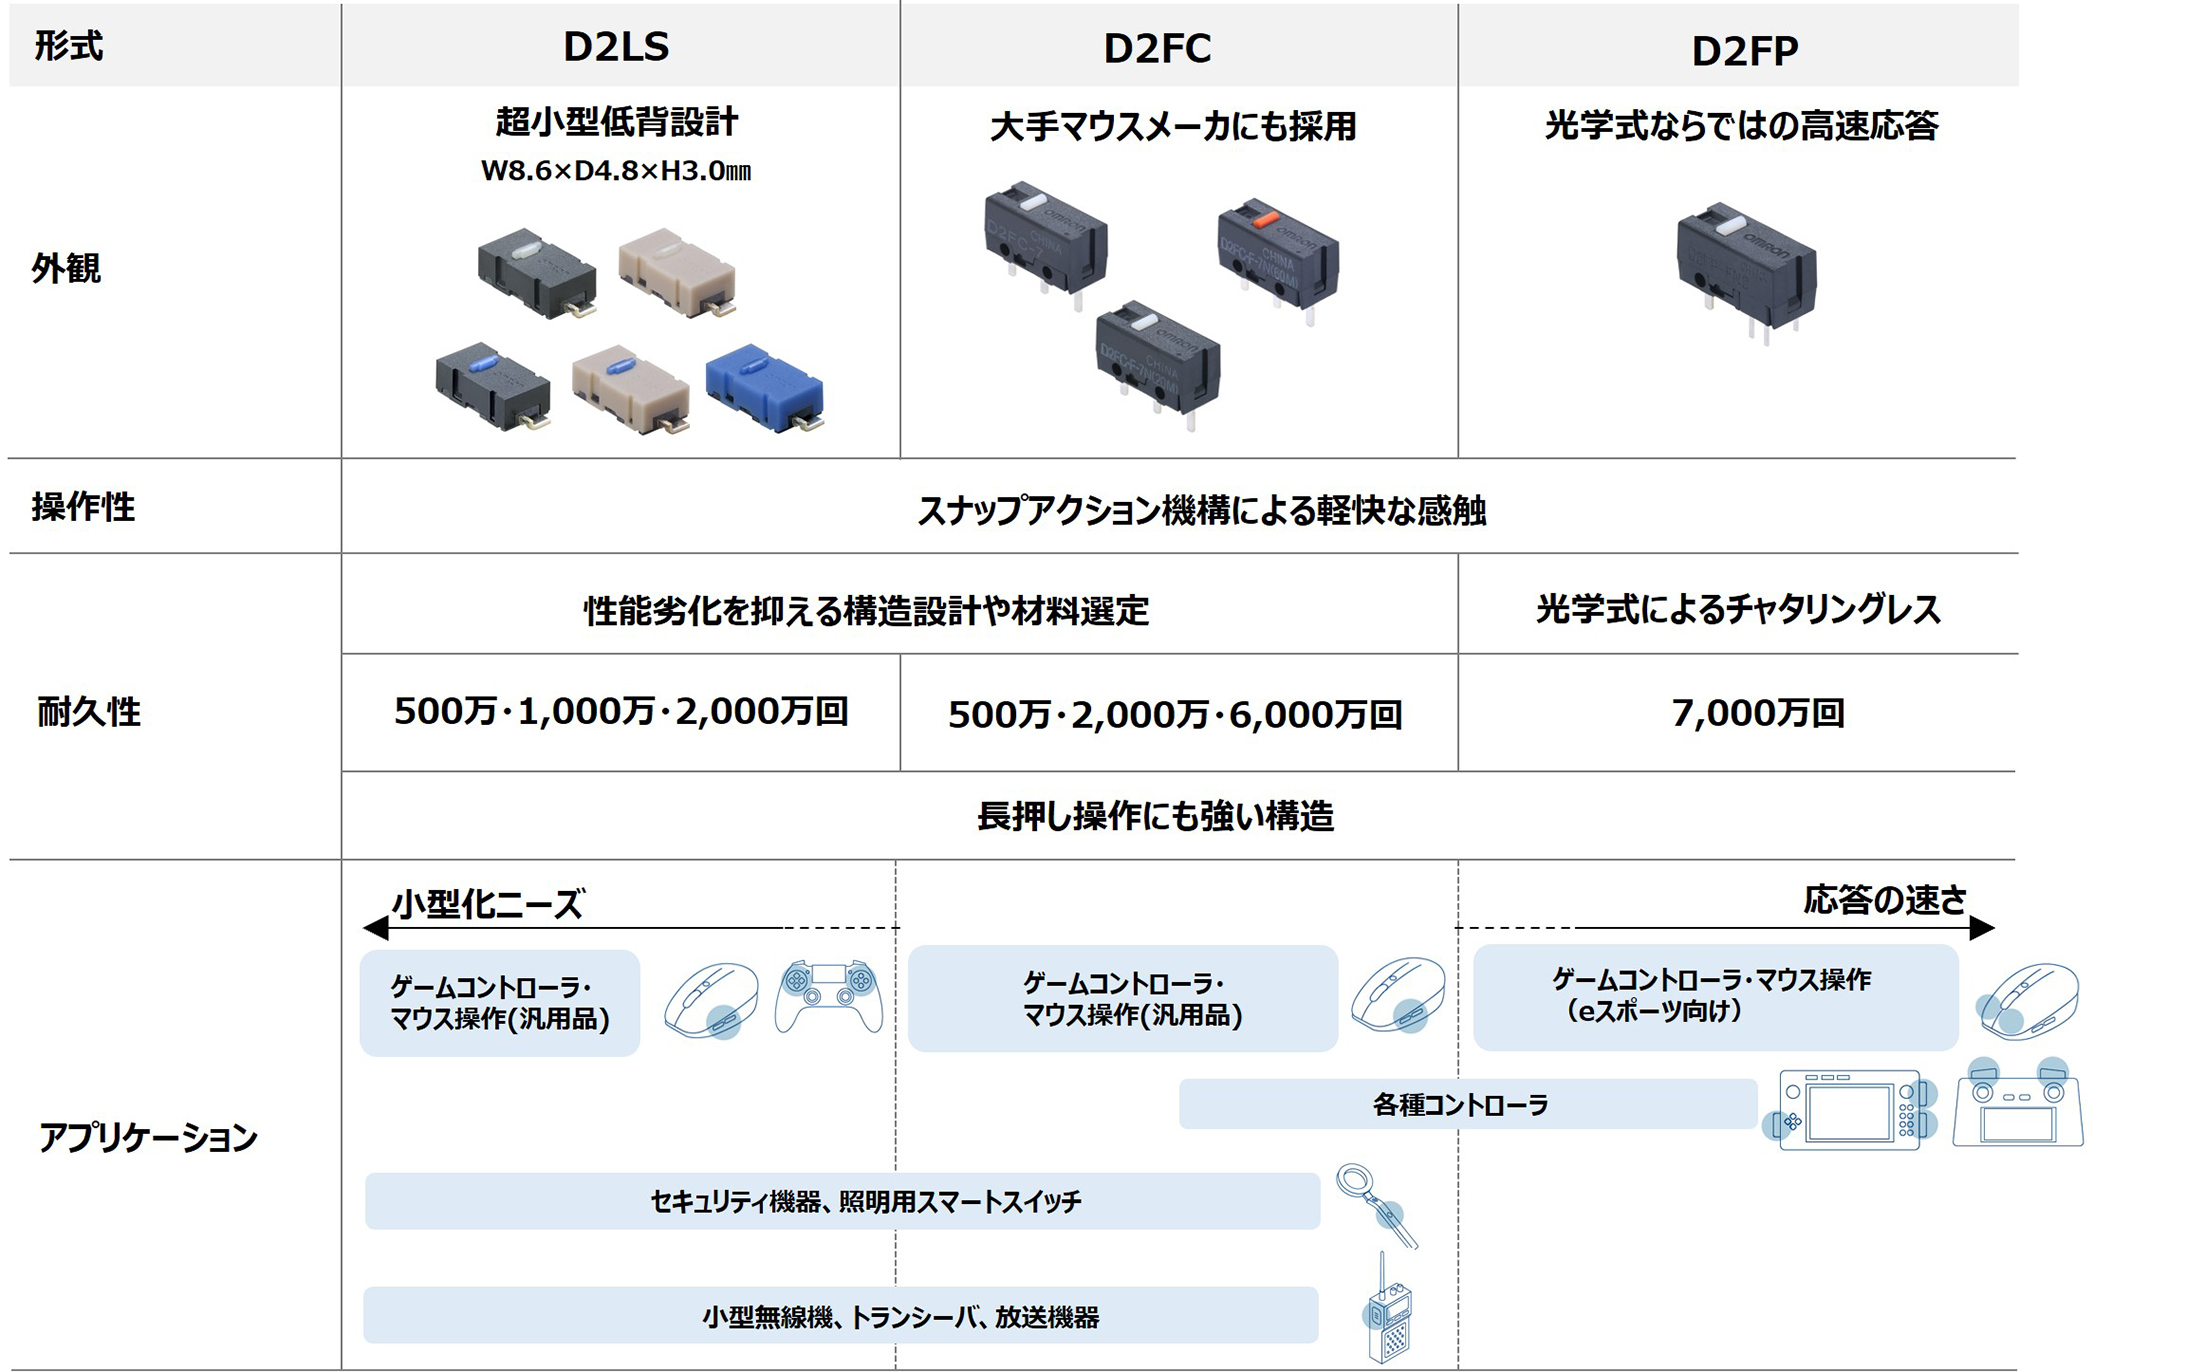 「D2FC」「D2LS」「D2FP」の主な仕様・用途